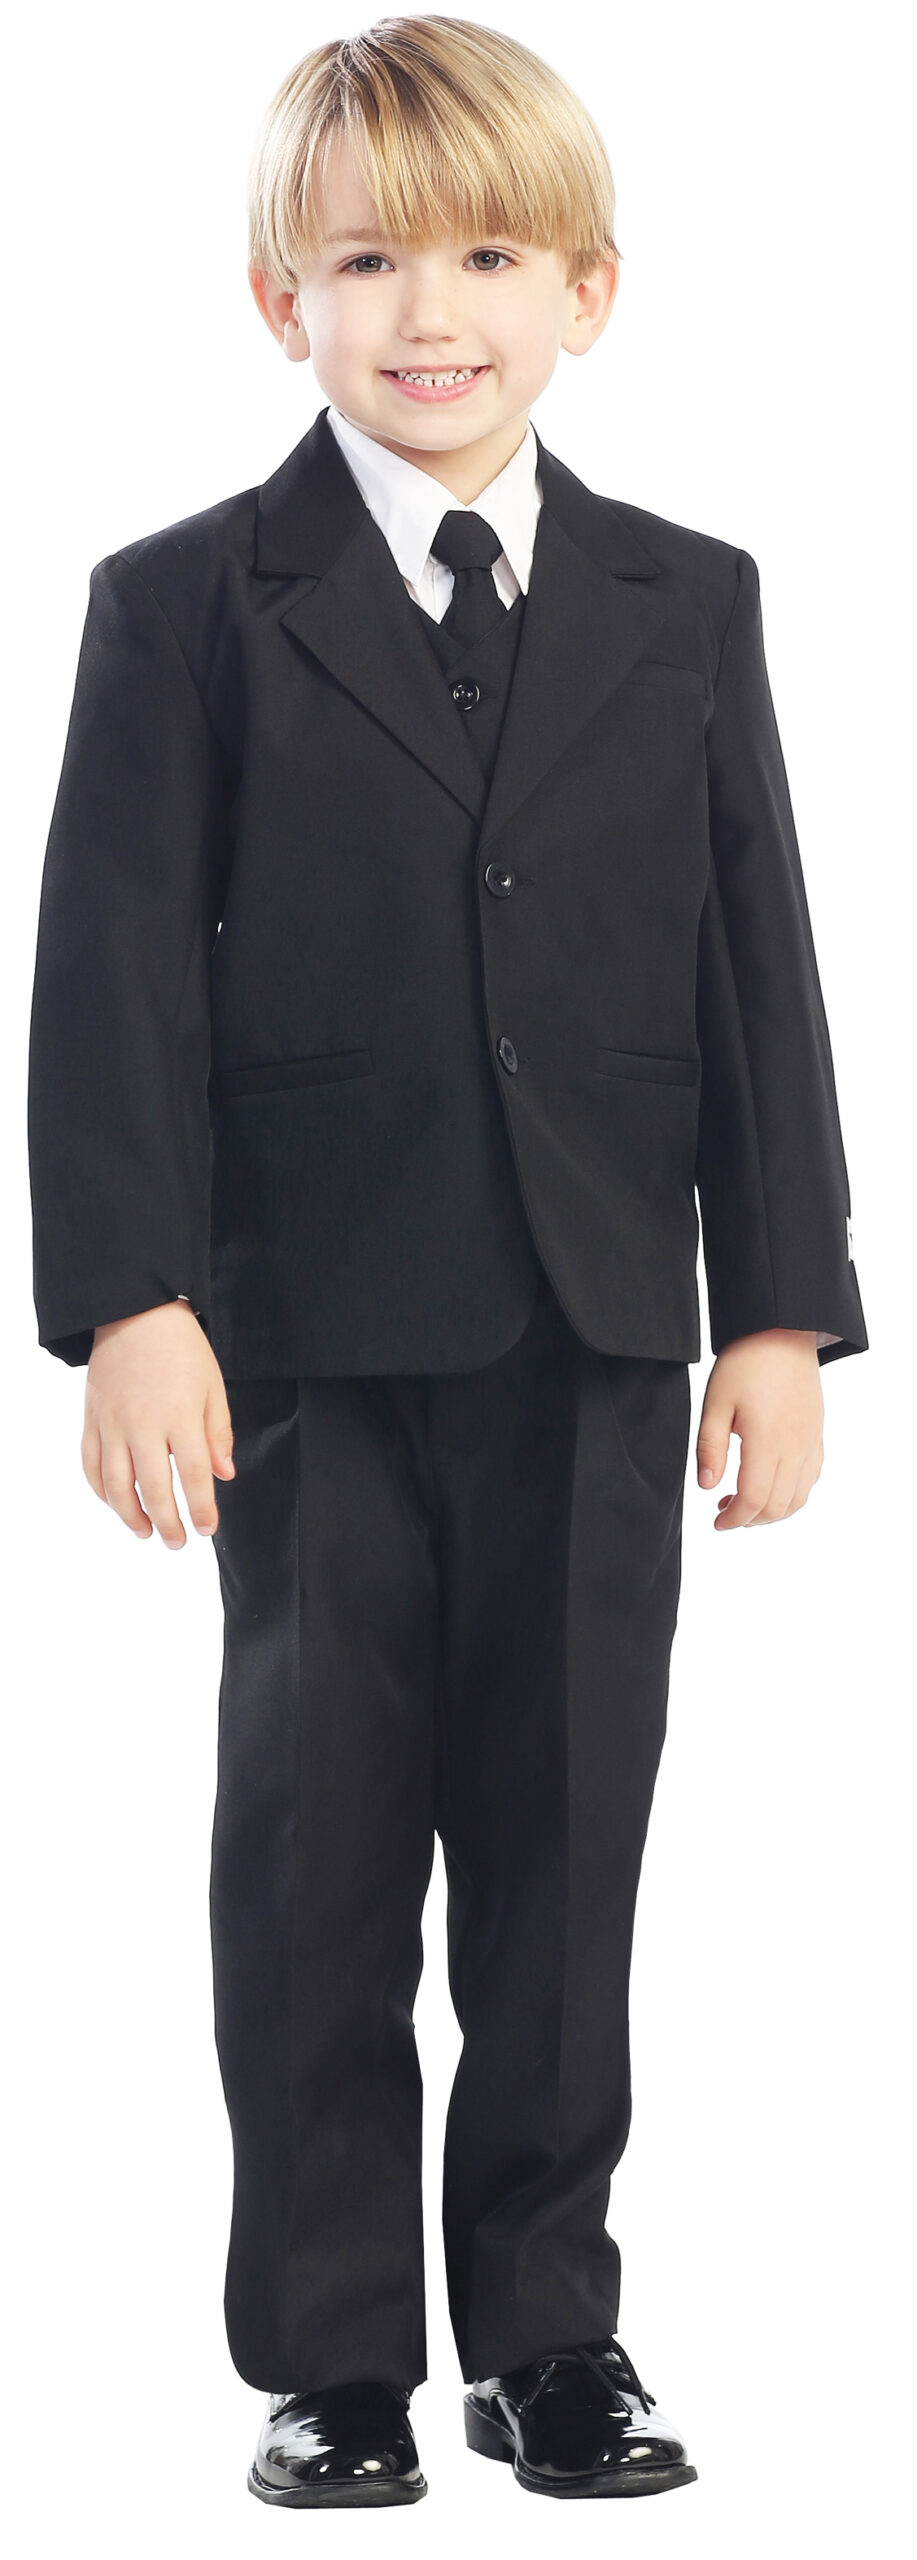 Avery Hill 5-Piece Boy's 2-Button Dress Suit Full-Back Vest - Black Size 7